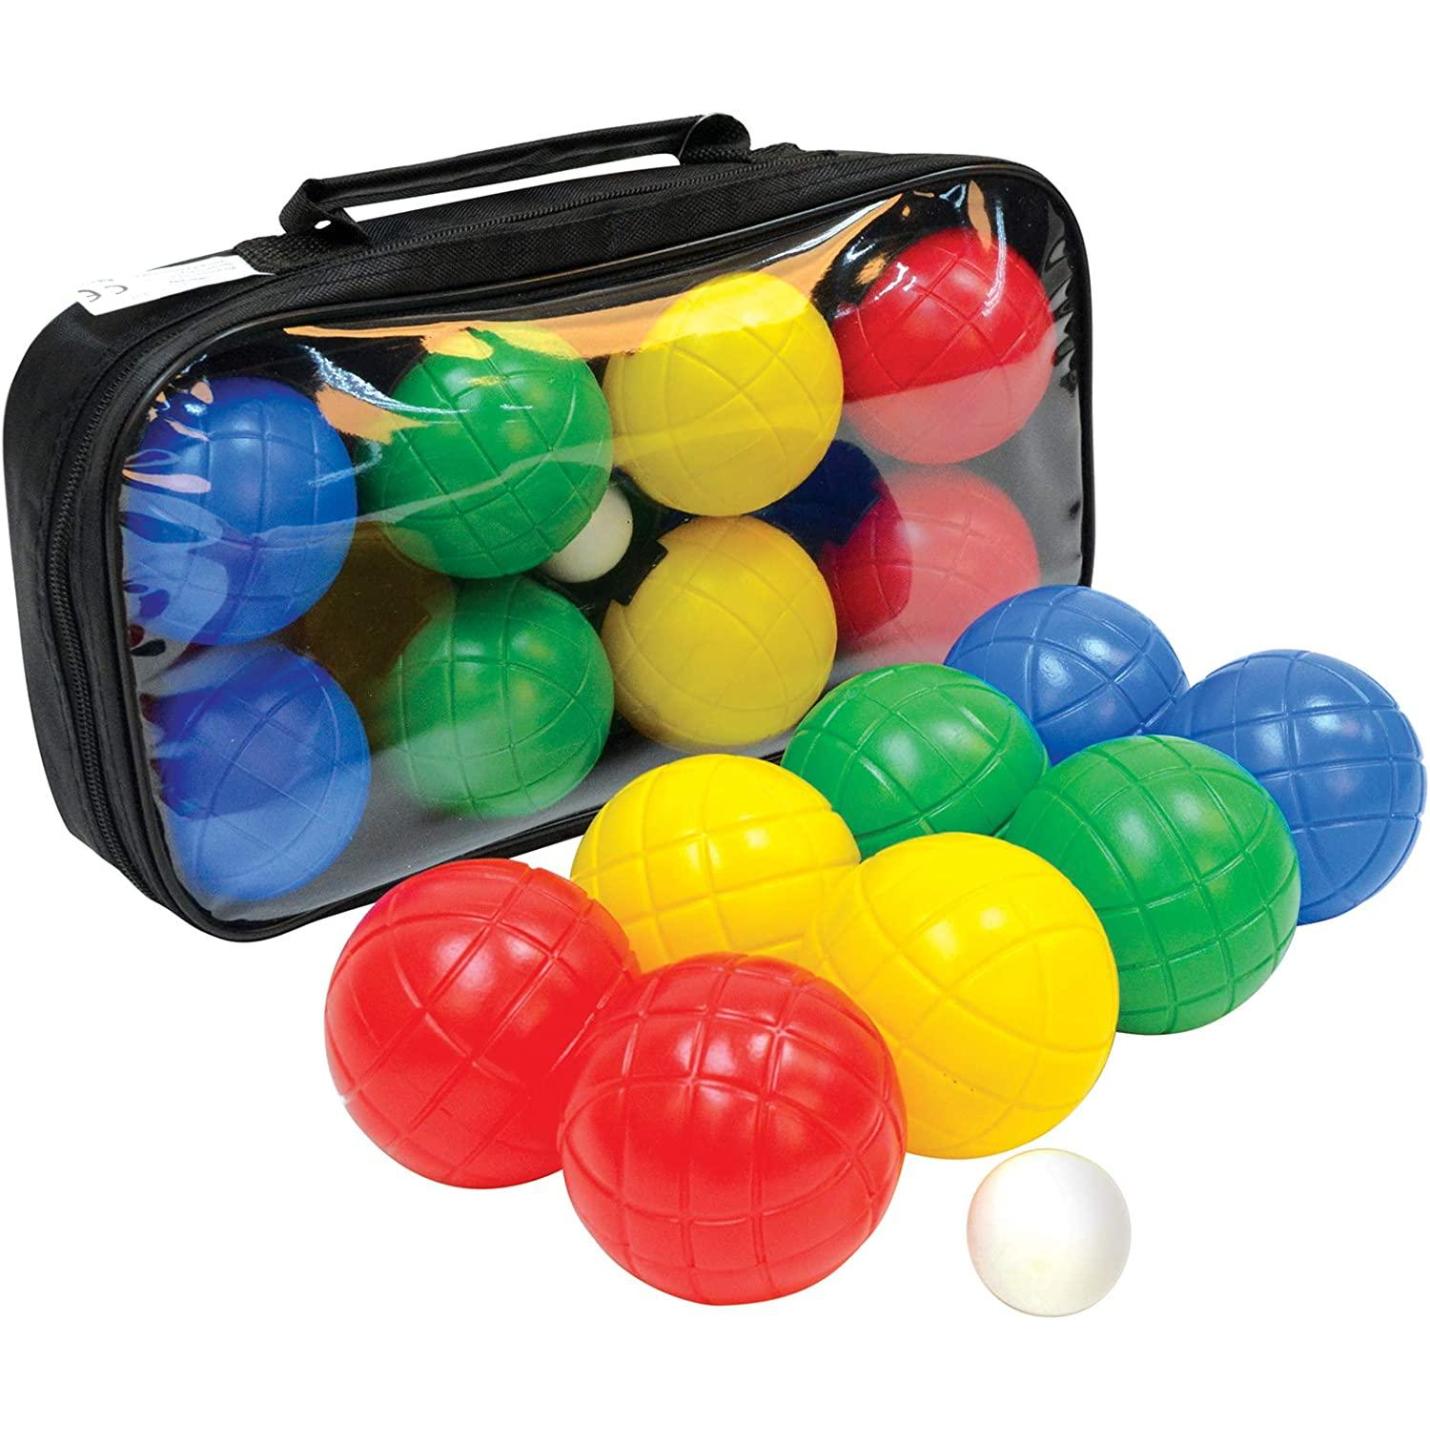 Boccia set, 4x 2 kunststof bollen, 1x doelkogel, in hersluitbare draagtas, Jeu-de-boules One size  Kleur gesorteerd.